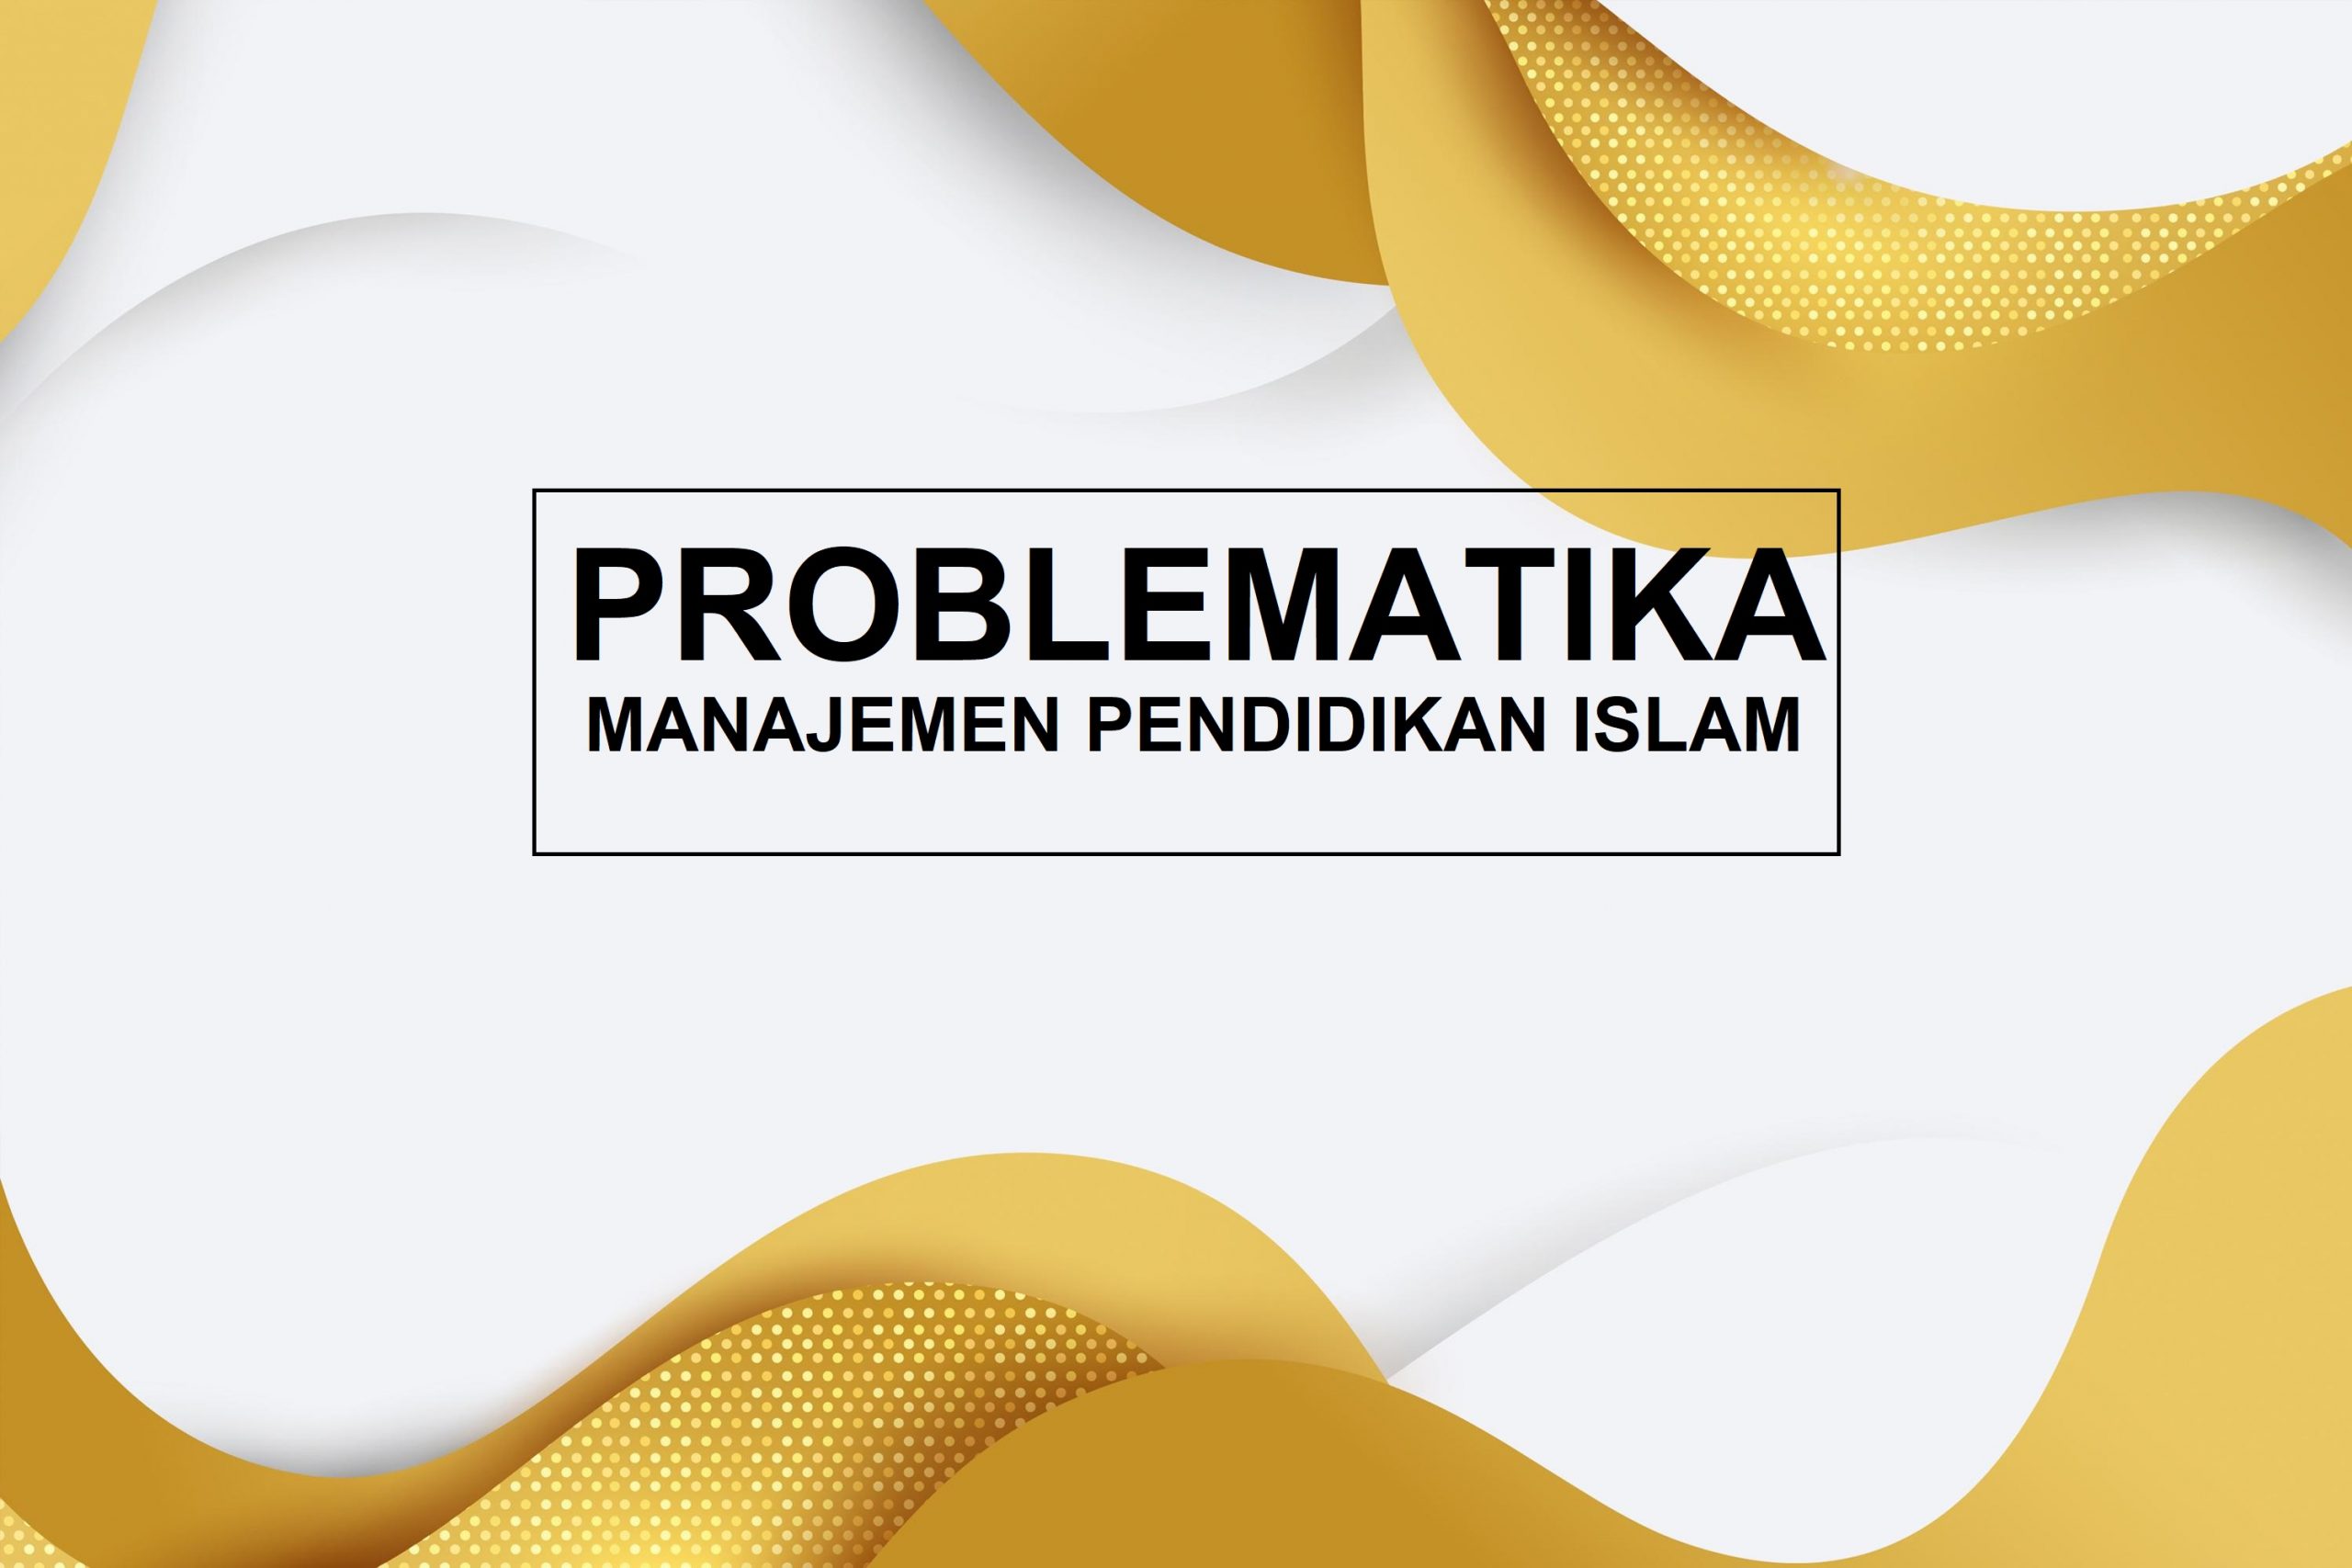 Problematika Manajemen Pendidikan Islam